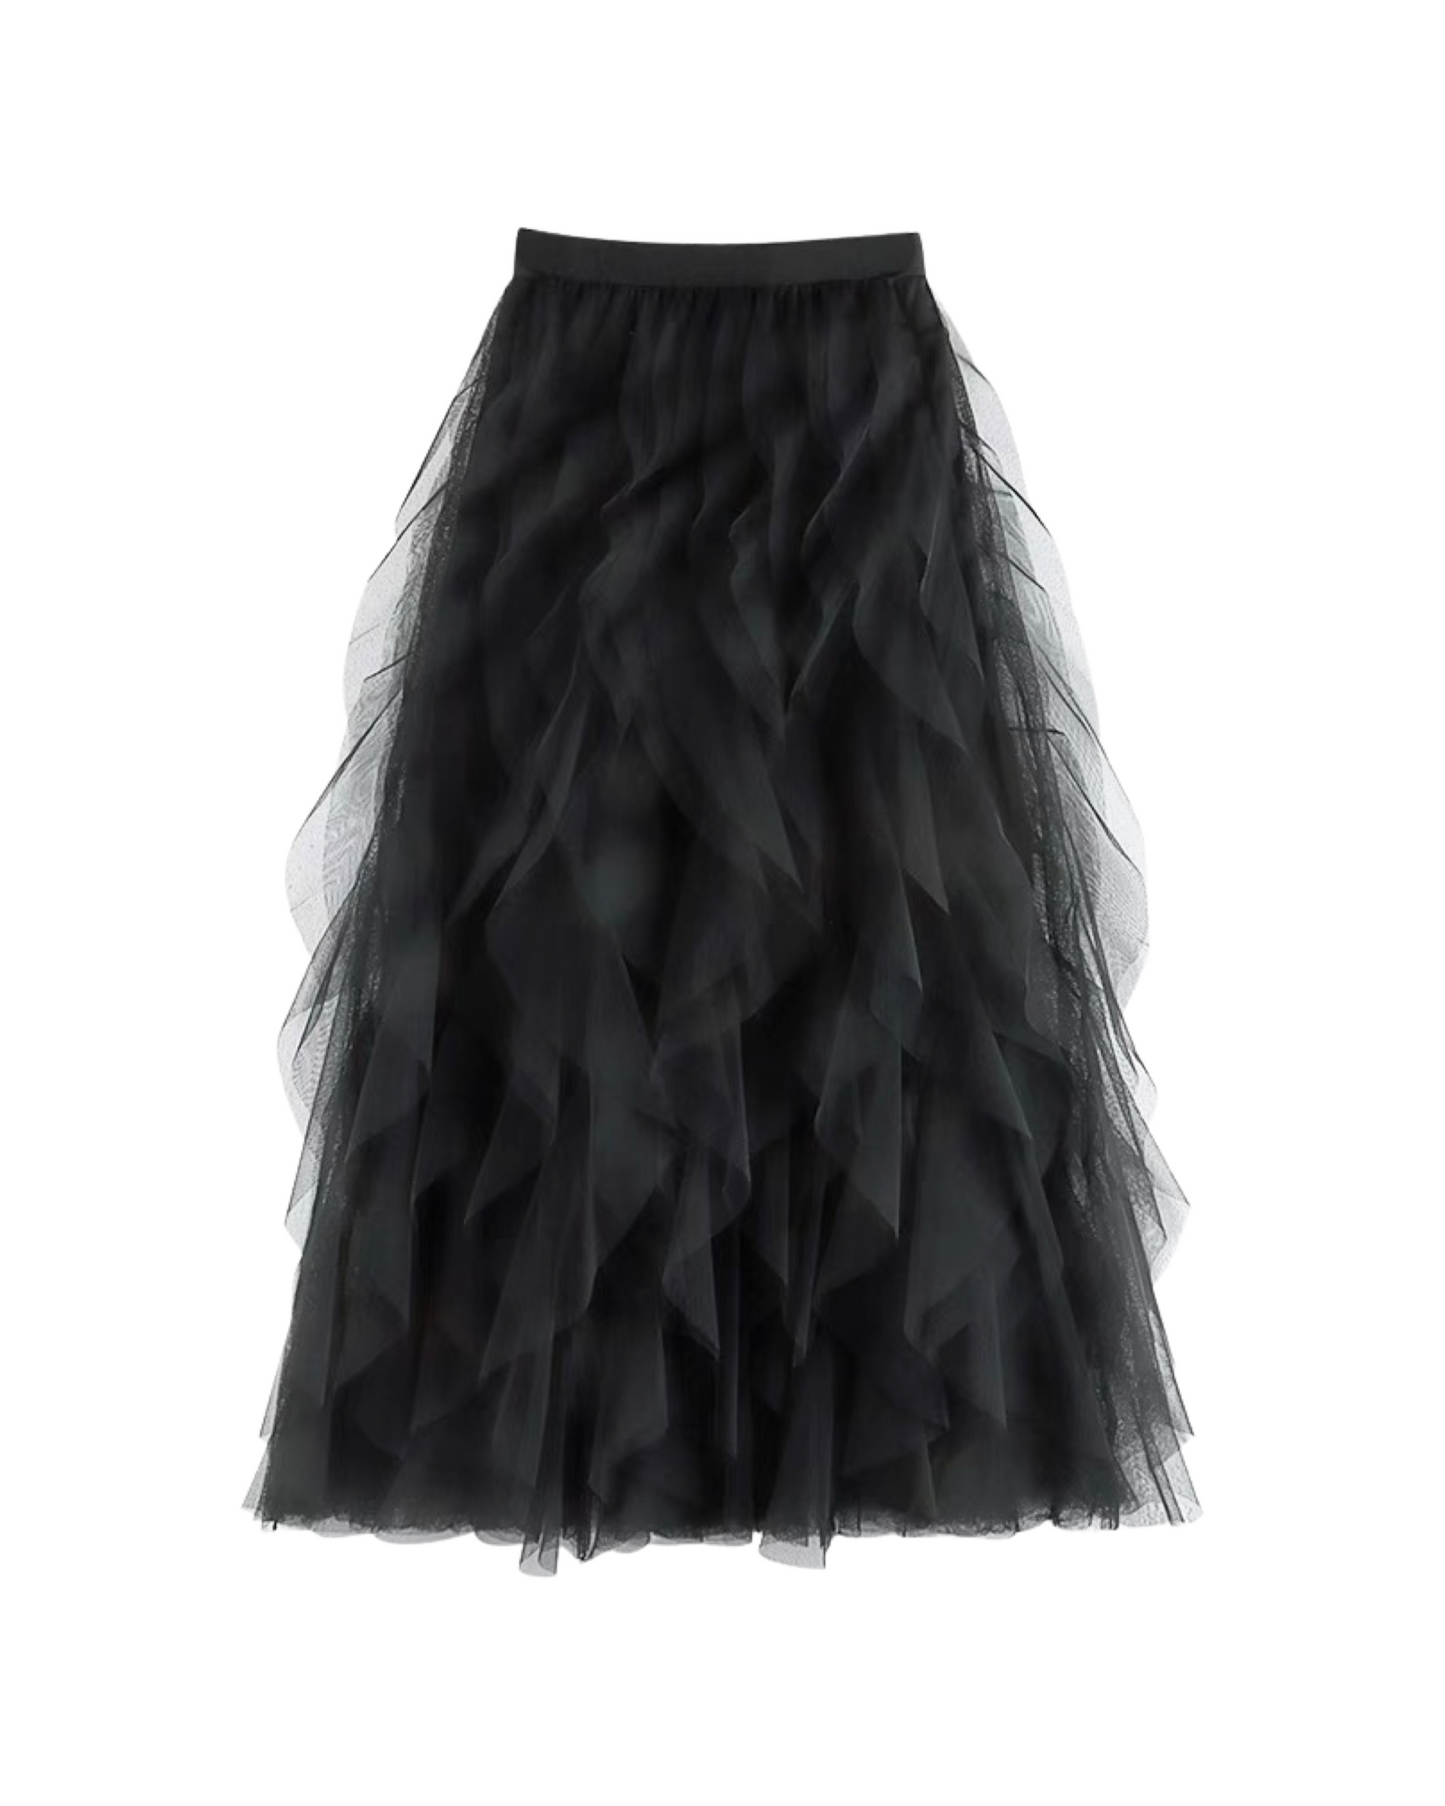 Fairy mesh Skirt (Black)